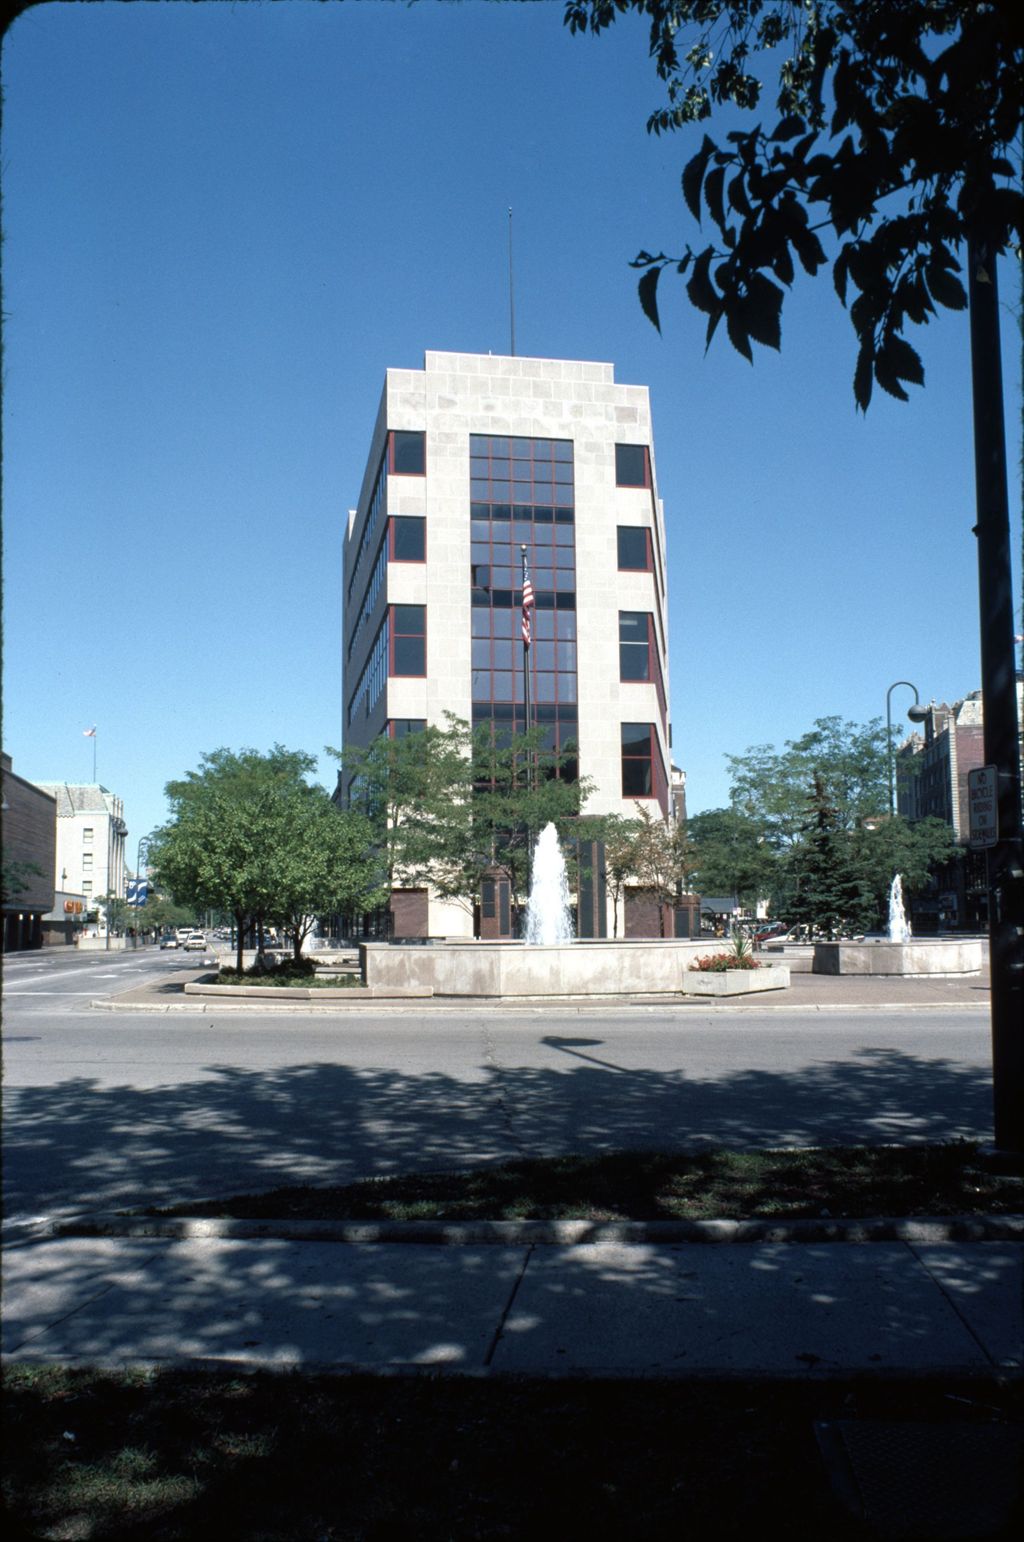 Miniature of Fountain Square Building, Evanston